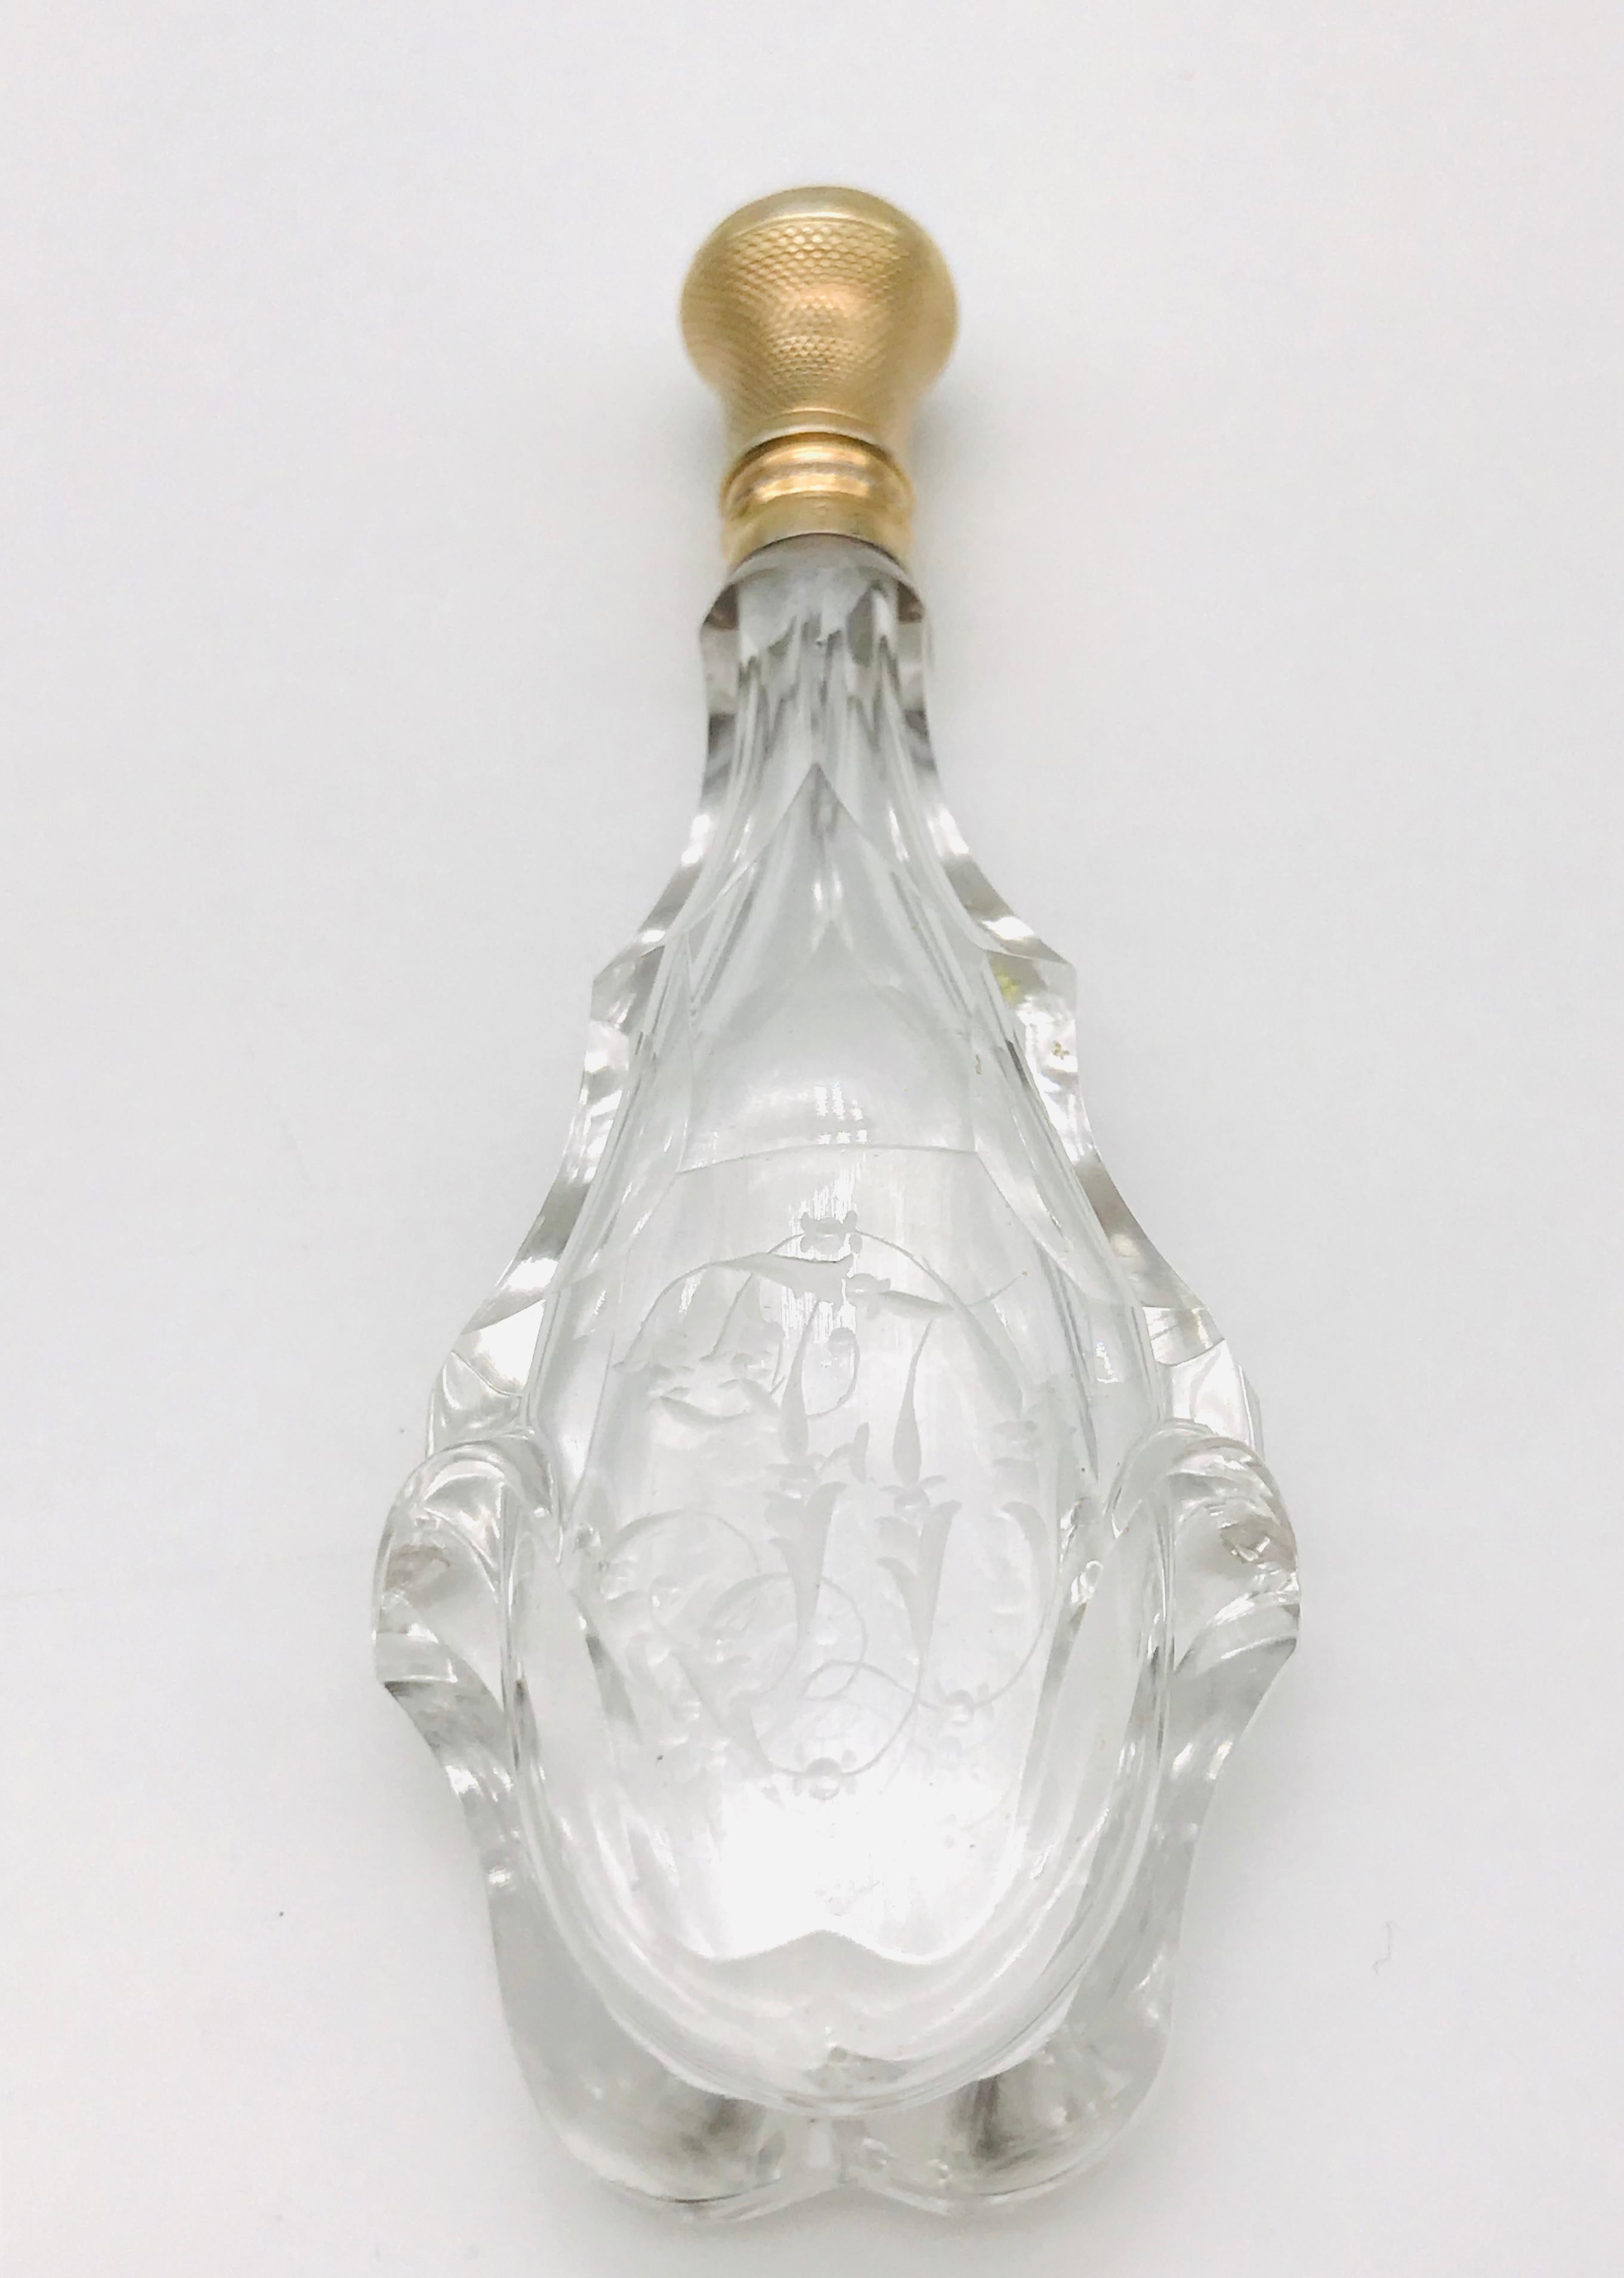 Willkommen in der bezaubernden Welt der Parfümflakons für Sammler. Diese Kristallflasche aus der Zeit von Charle X (1830) ist ein wahres Wunderwerk. Sein exquisites Design und seine sorgfältige Verarbeitung machen ihn zu einem außergewöhnlichen